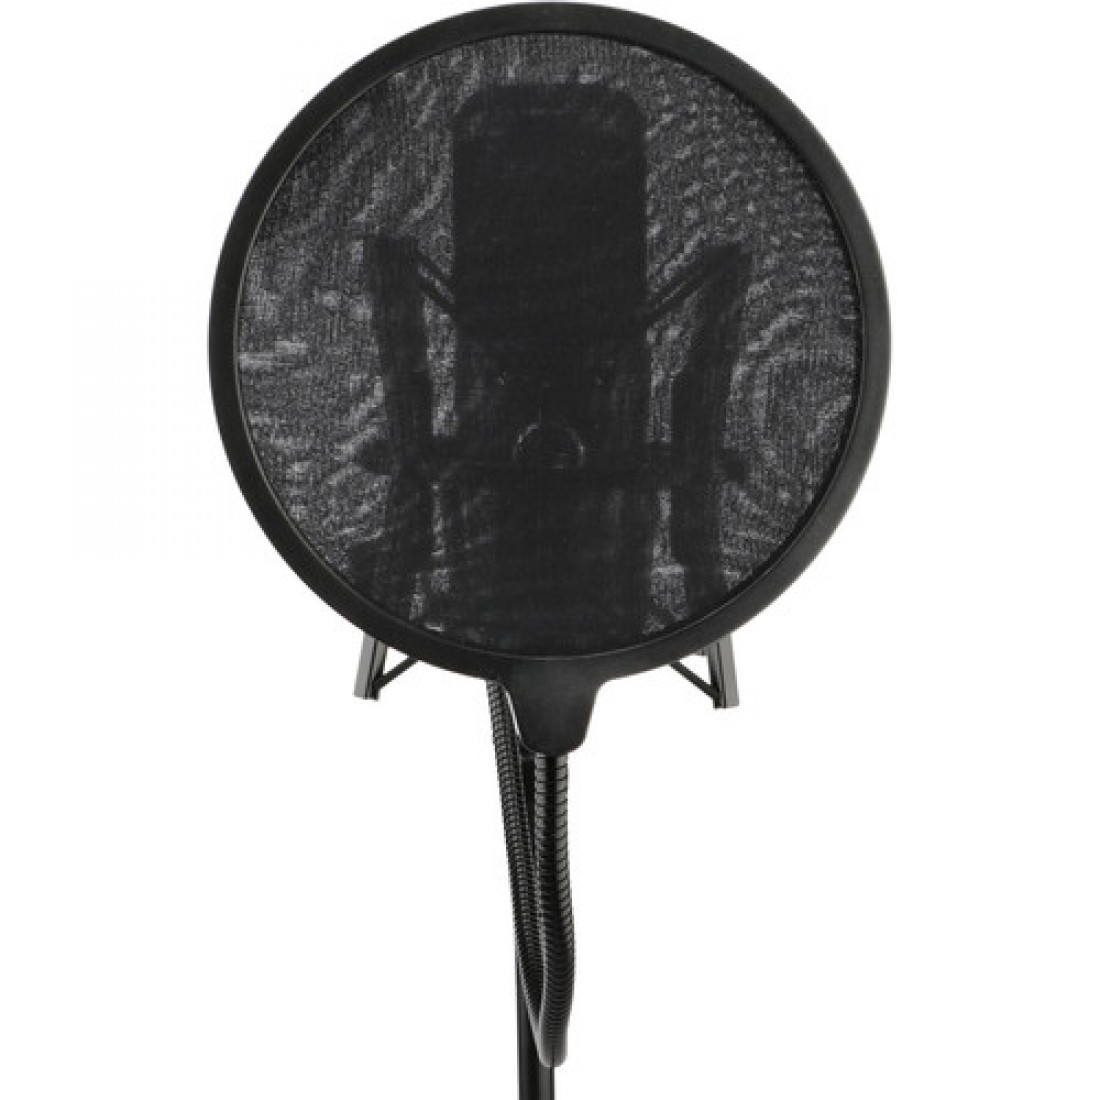 Filtro pop para micrófono con cuello de cisne y abrazadera estilo C Foto 7229364-1.jpg